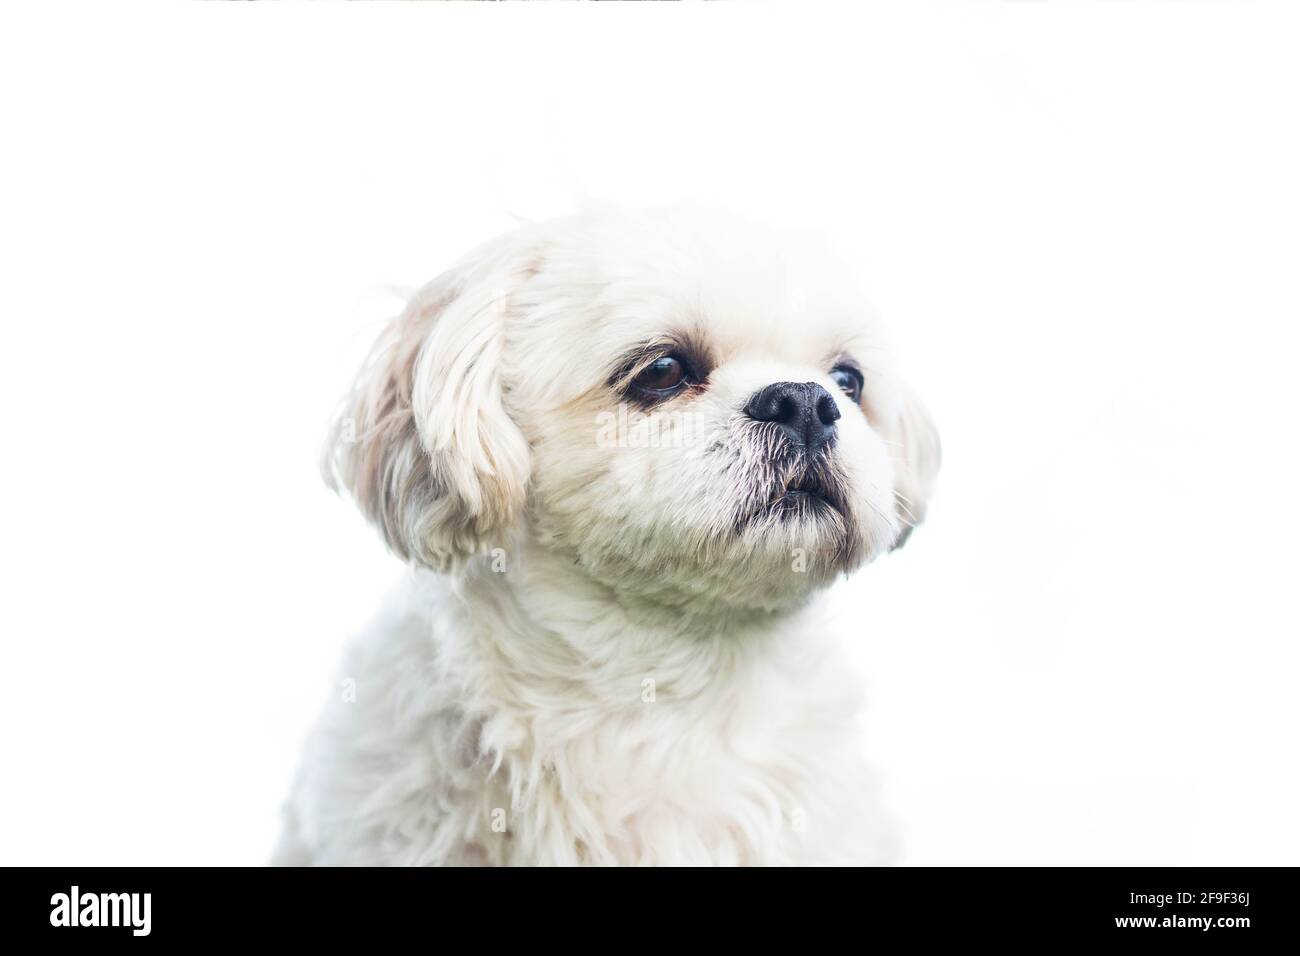 Nahaufnahme eines maltesischen Schoßhundes auf einem weißen Bild Hintergrund Stockfoto